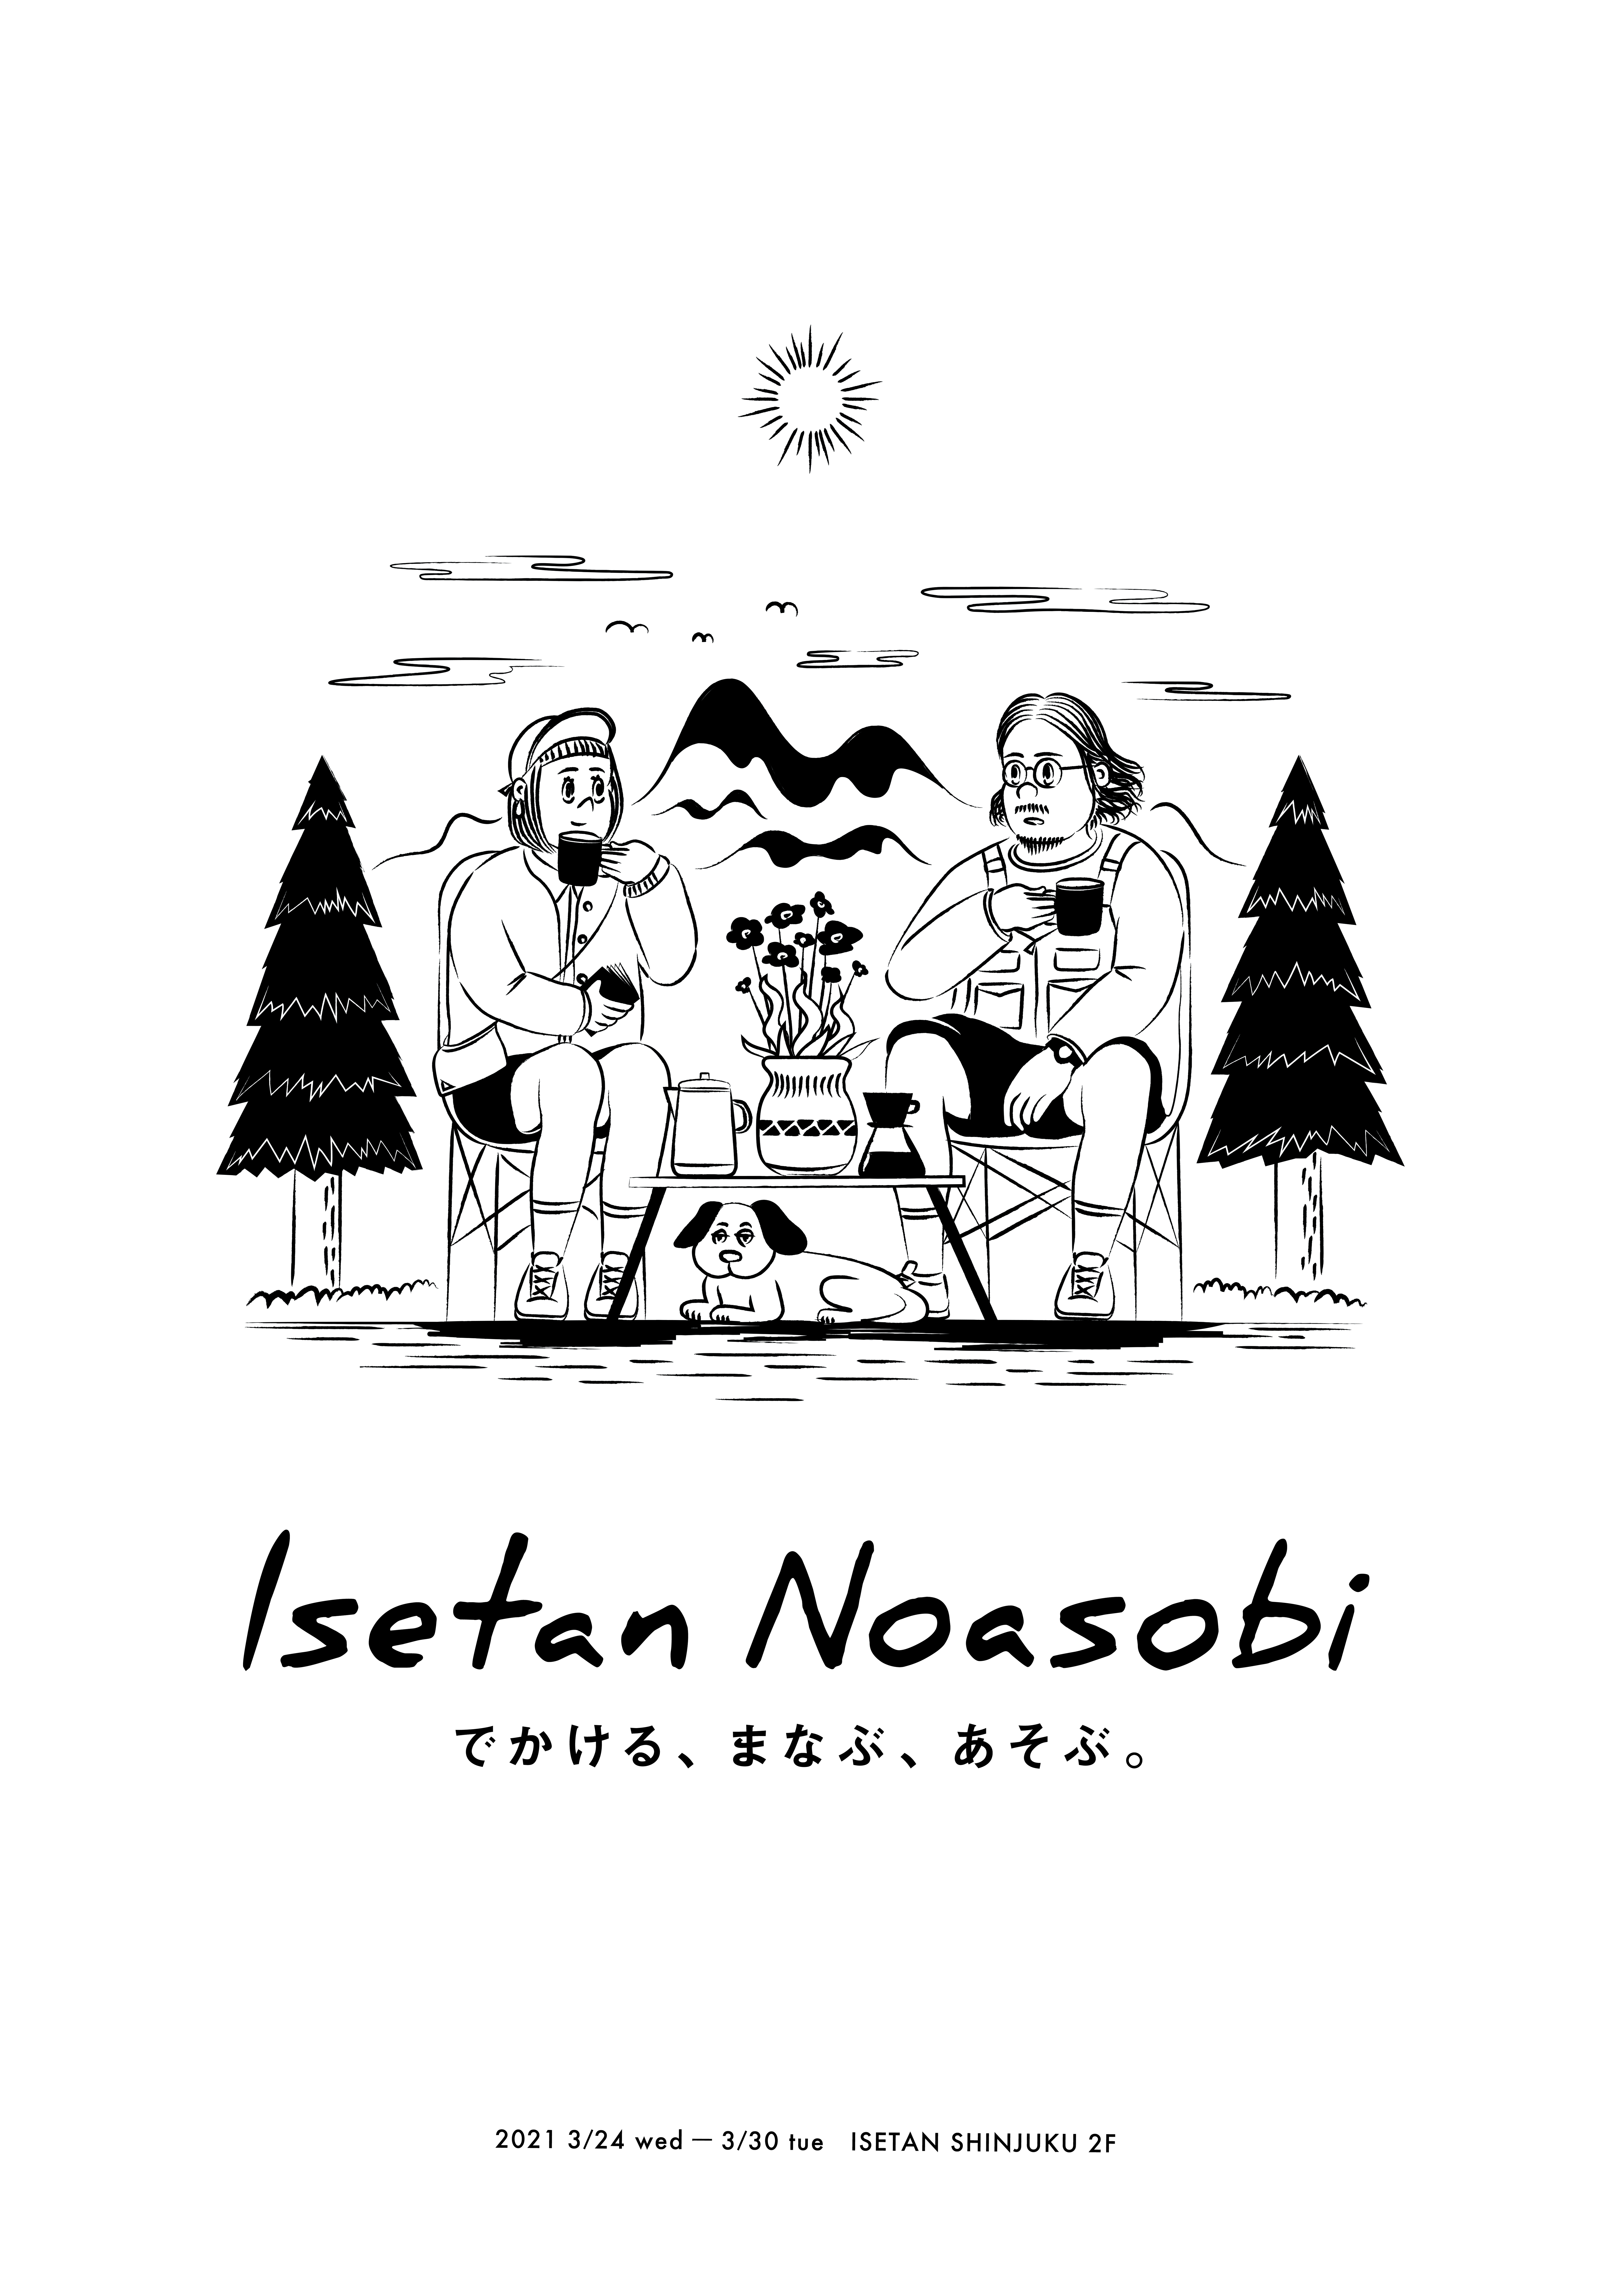 イベント出展：Isetan Noasobi